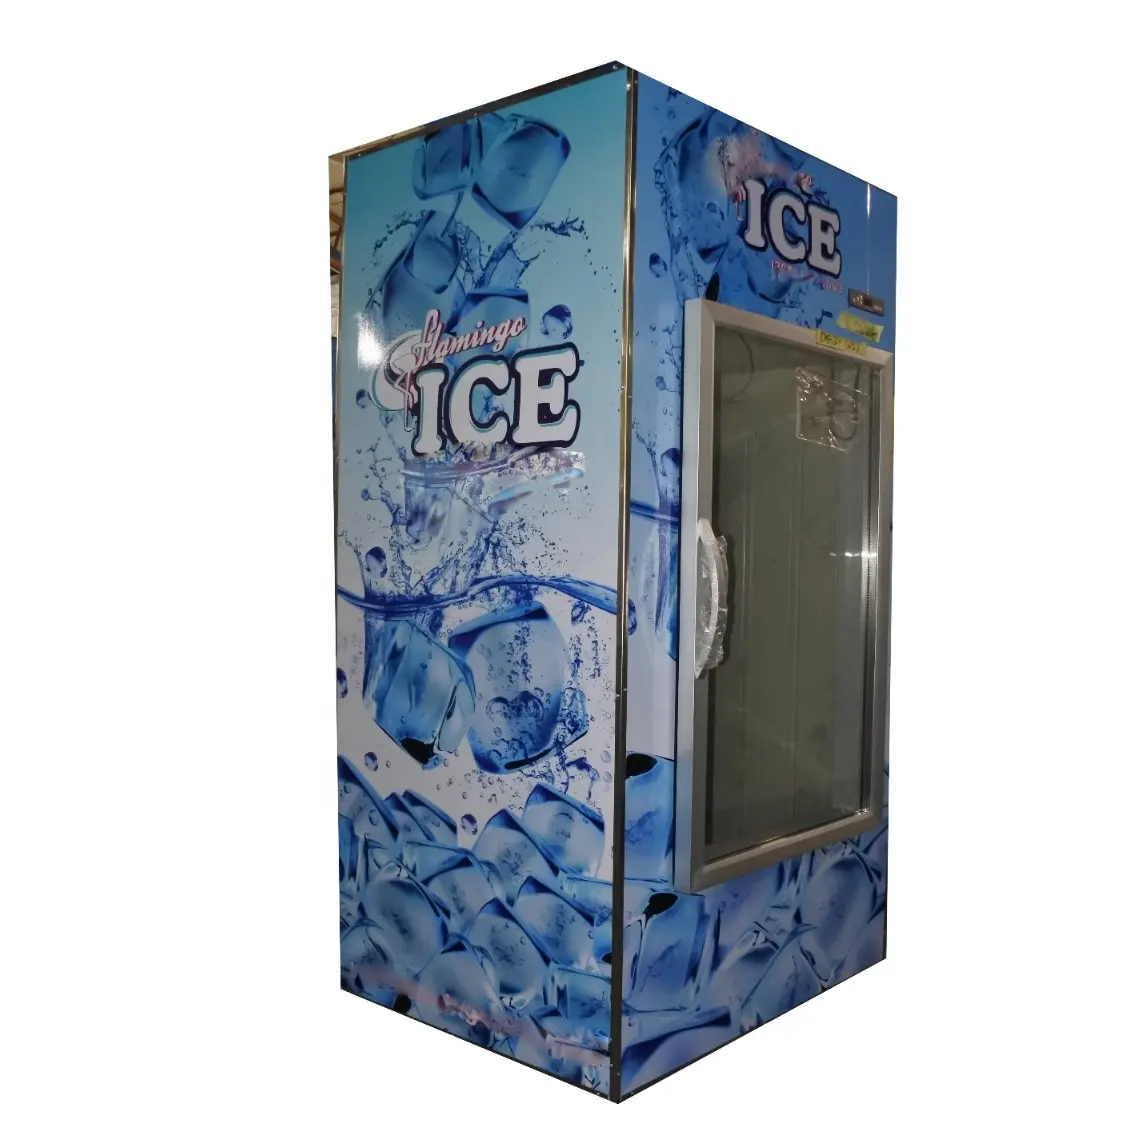 จอแสดงผลในร่ม1แก้วสำหรับสถานีบริการน้ำมันโดยใช้สแตนเลสเย็นน้ำแข็ง